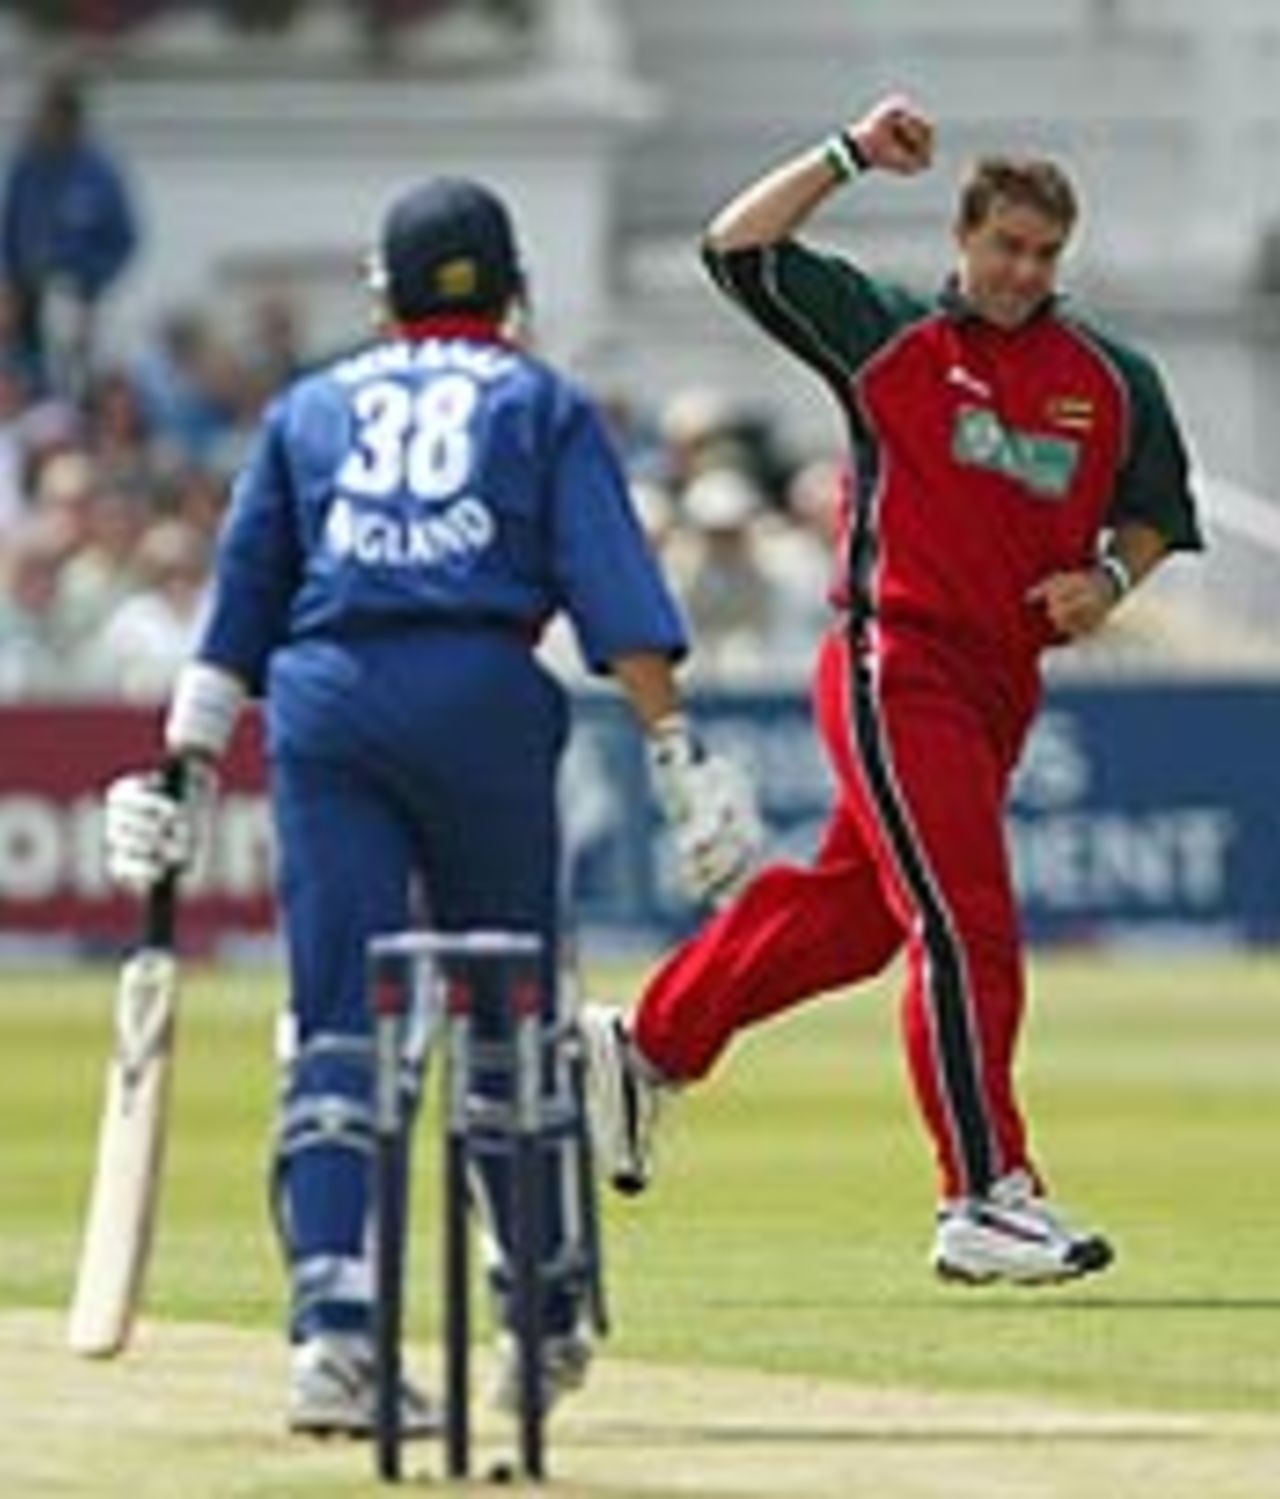 Heath Streak dismisses Vikram Solanki, England v Zimbabwe, June 26, 2003